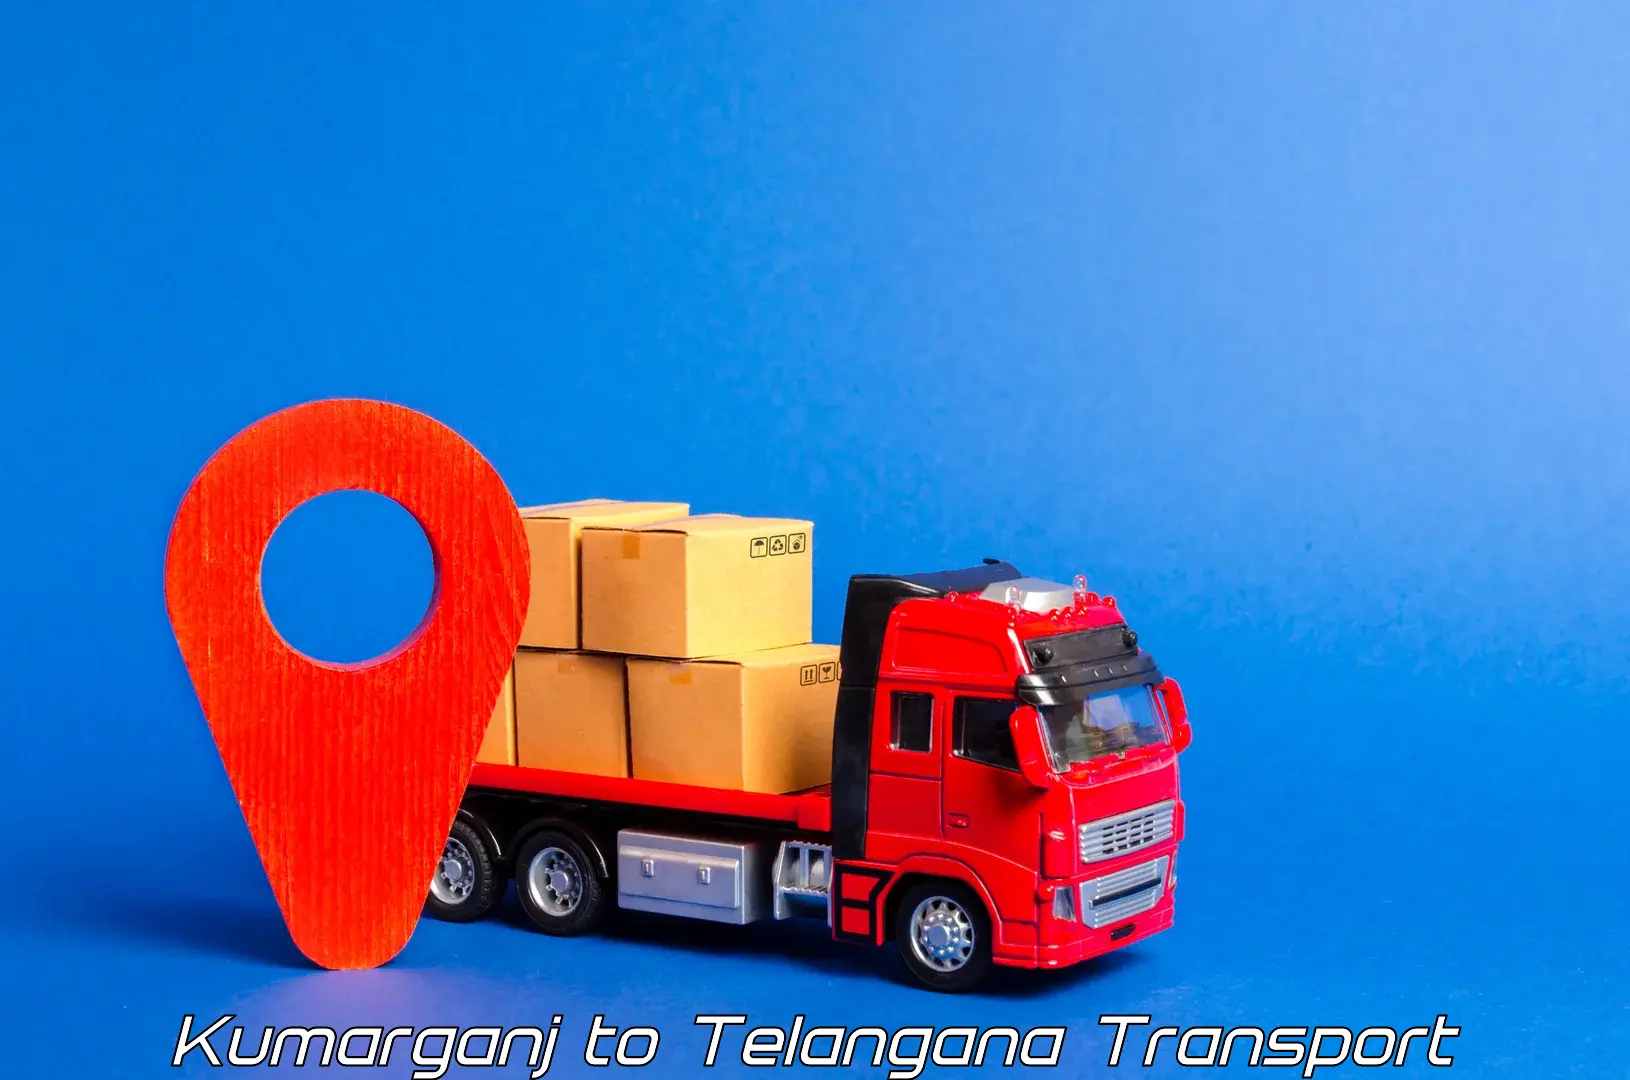 Furniture transport service Kumarganj to Telangana